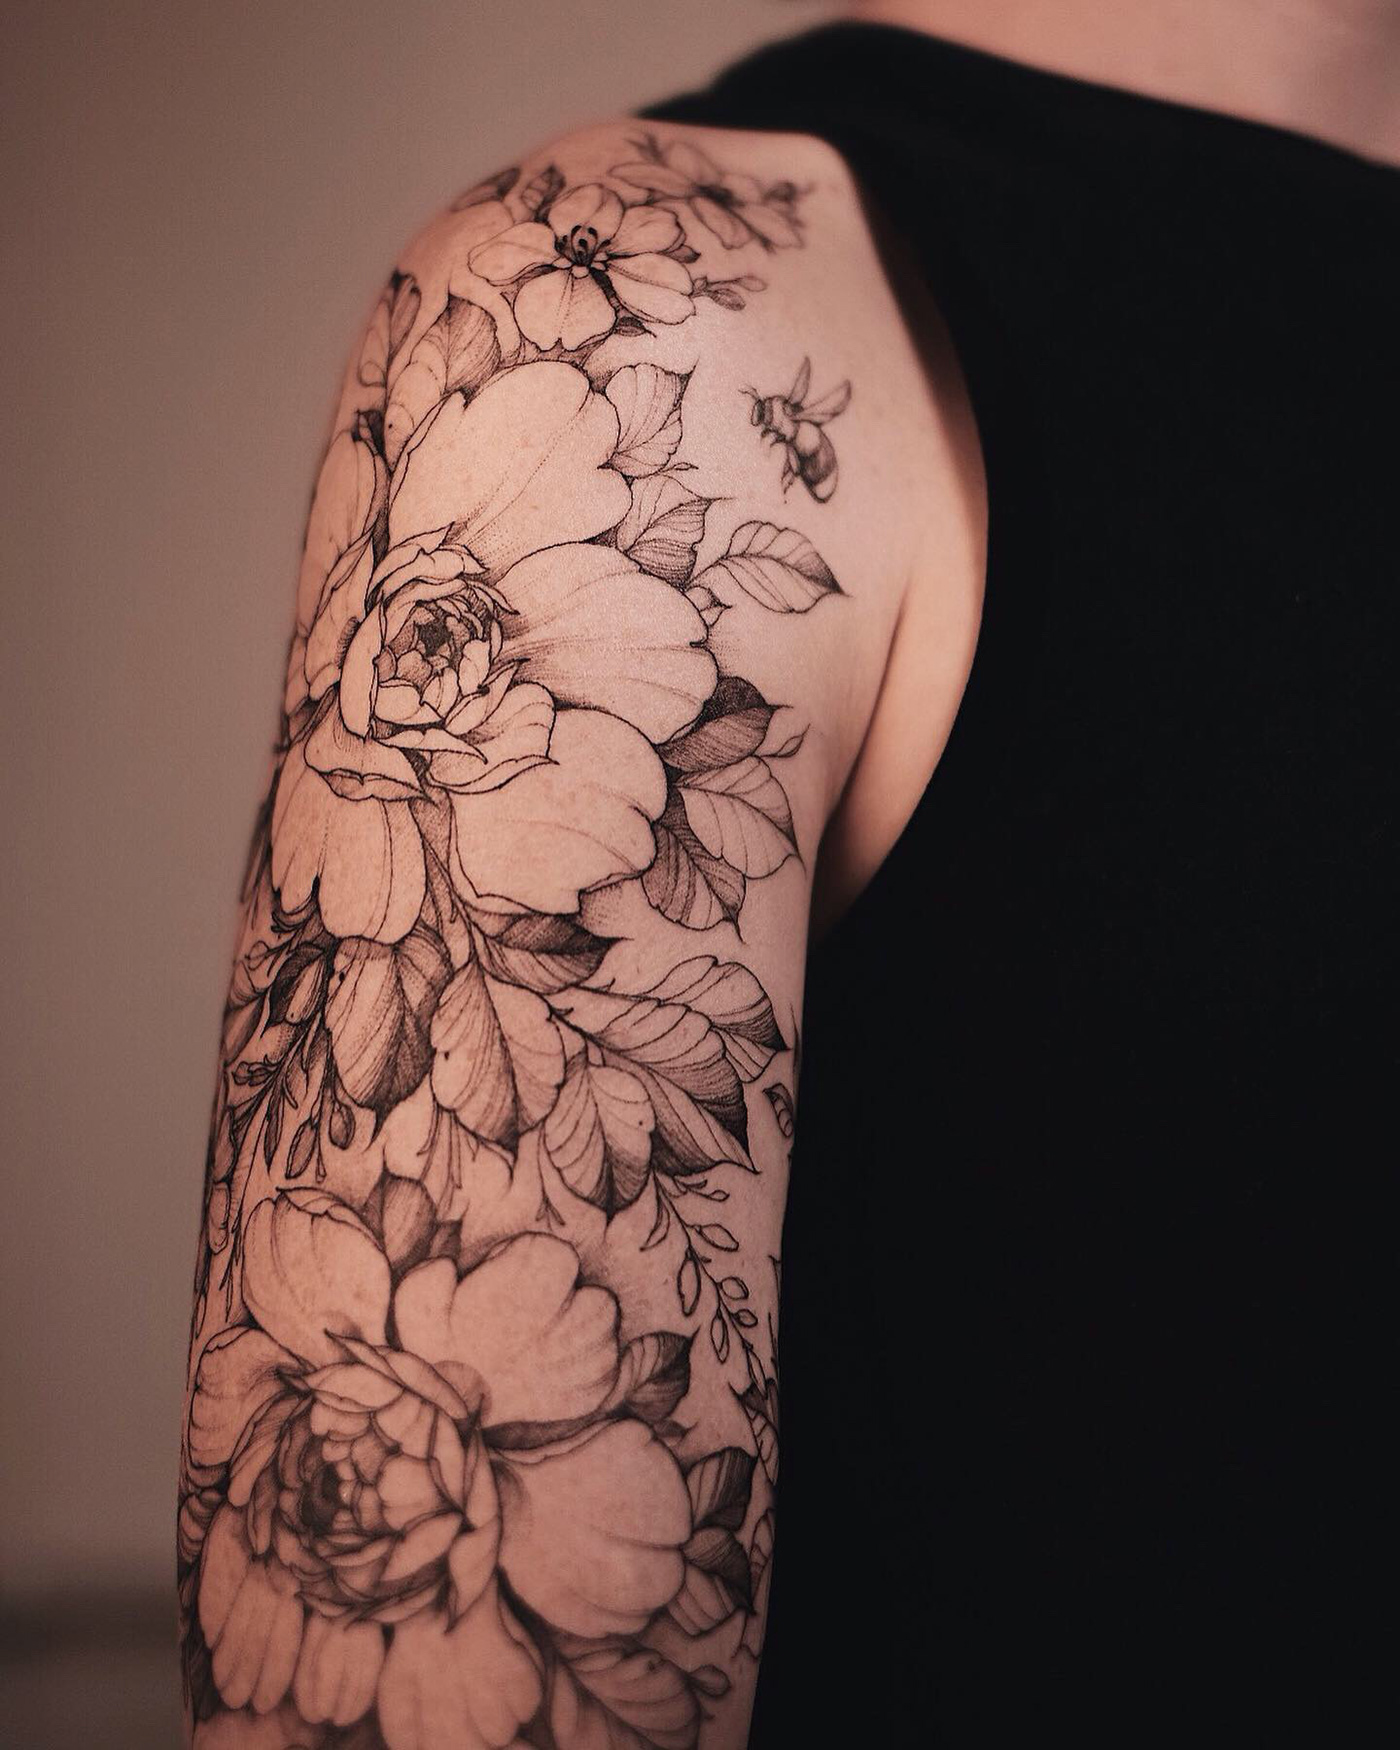 tattoo Tattooart inks Flowers Nature flowers tattoo Floral Heart plants